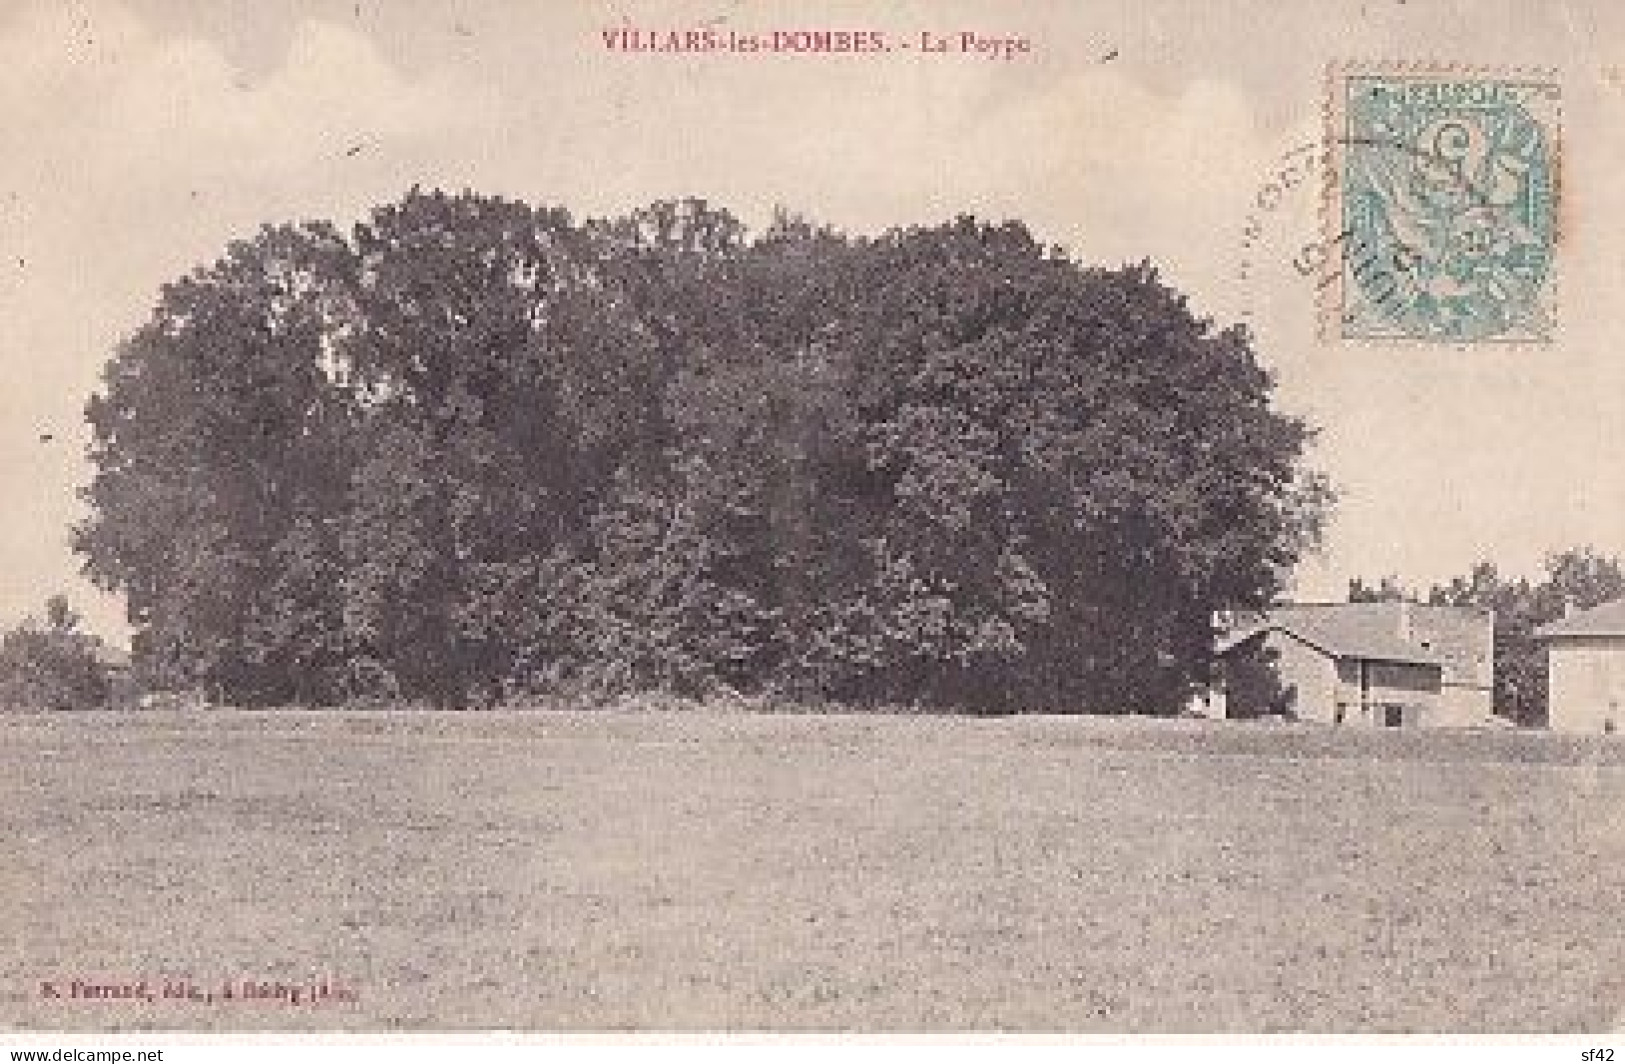 VILLARS LES DOMBES                     LA POYPE - Villars-les-Dombes